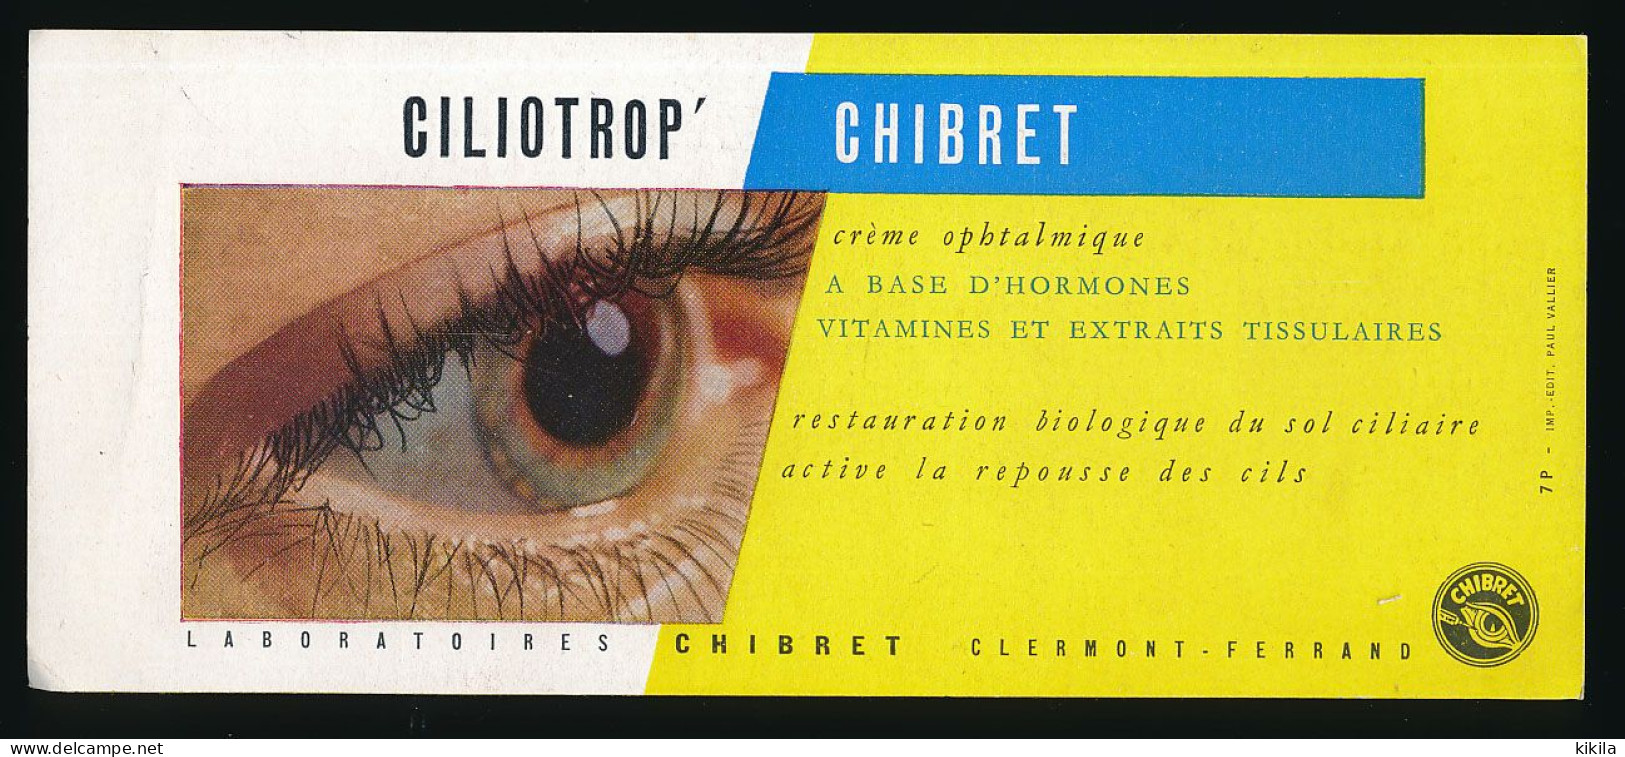 Buvard 21 X 9 Laboratoires CHIBRET Clermont-Ferrand 63  Crème Ophtalmique Ciliotrop   œil - Drogheria